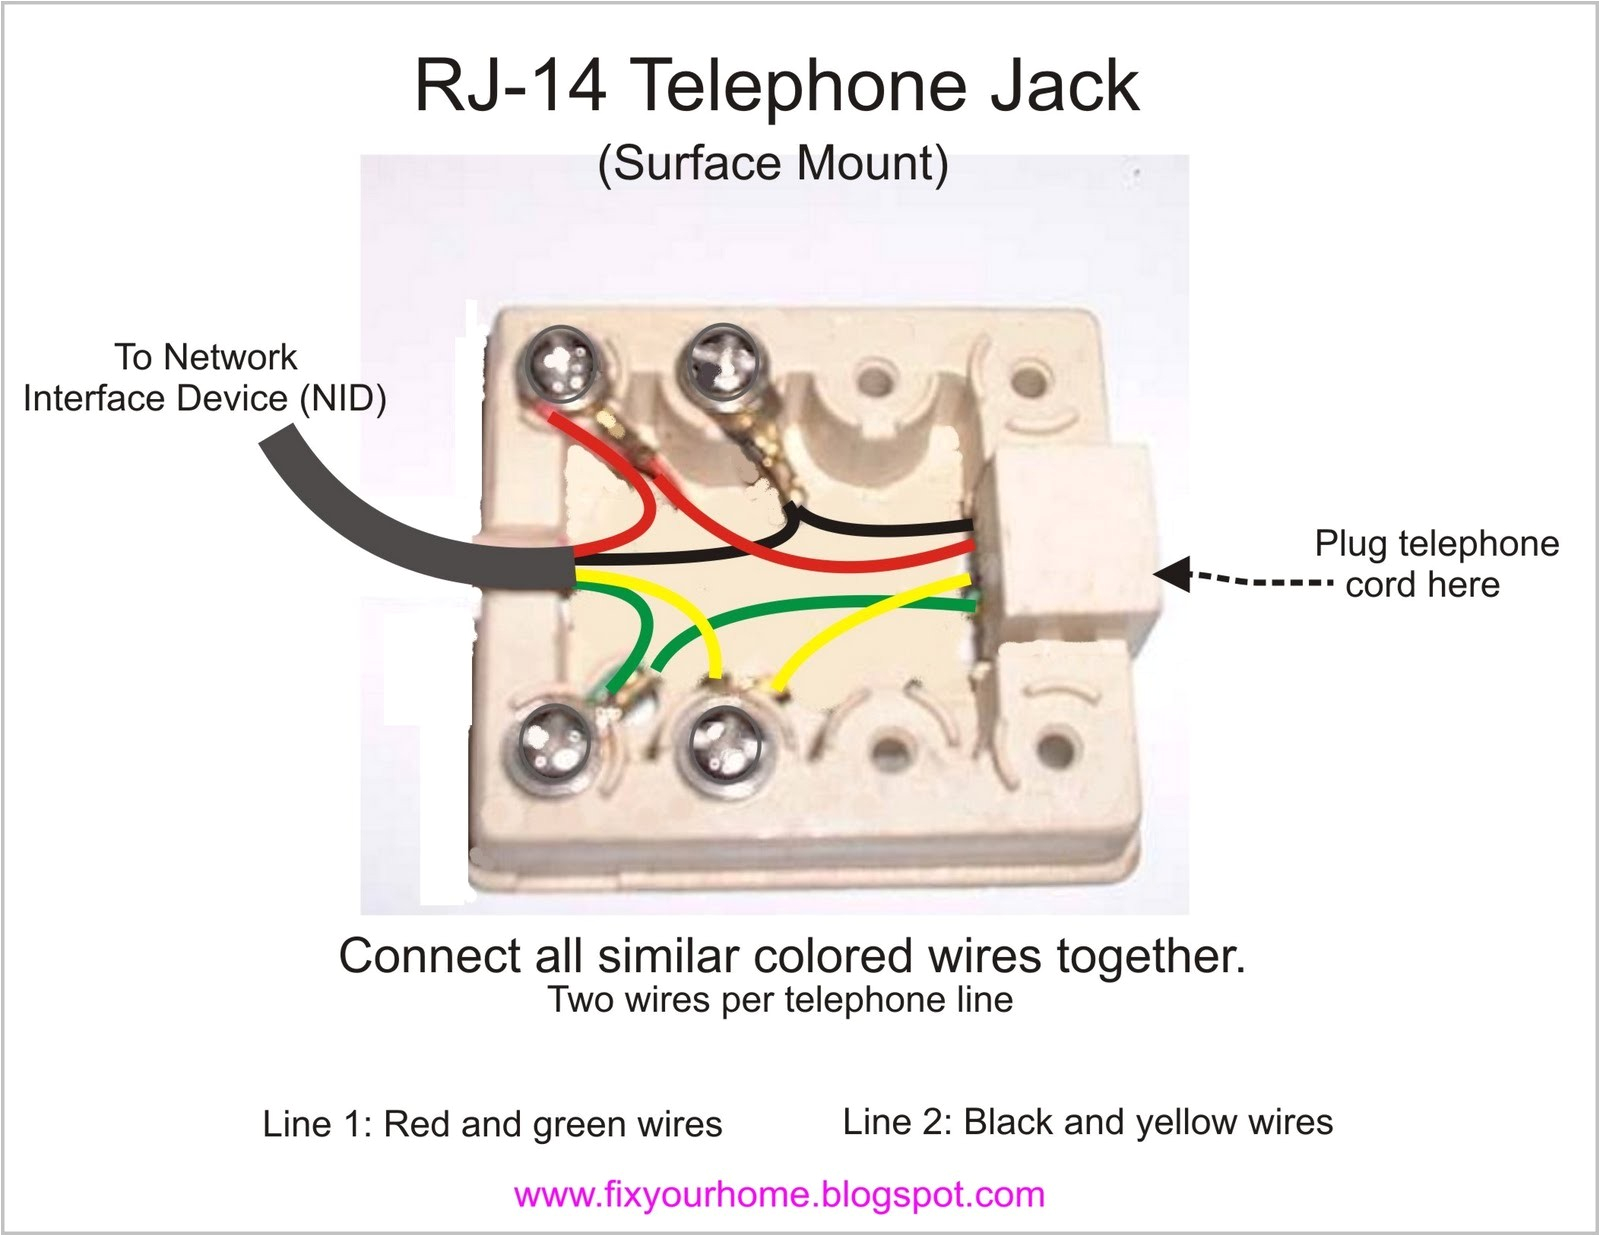 rj12 telephone wiring diagram australia unique rj25 telephone jack wiring wiring diagram of rj12 telephone wiring diagram australia jpg